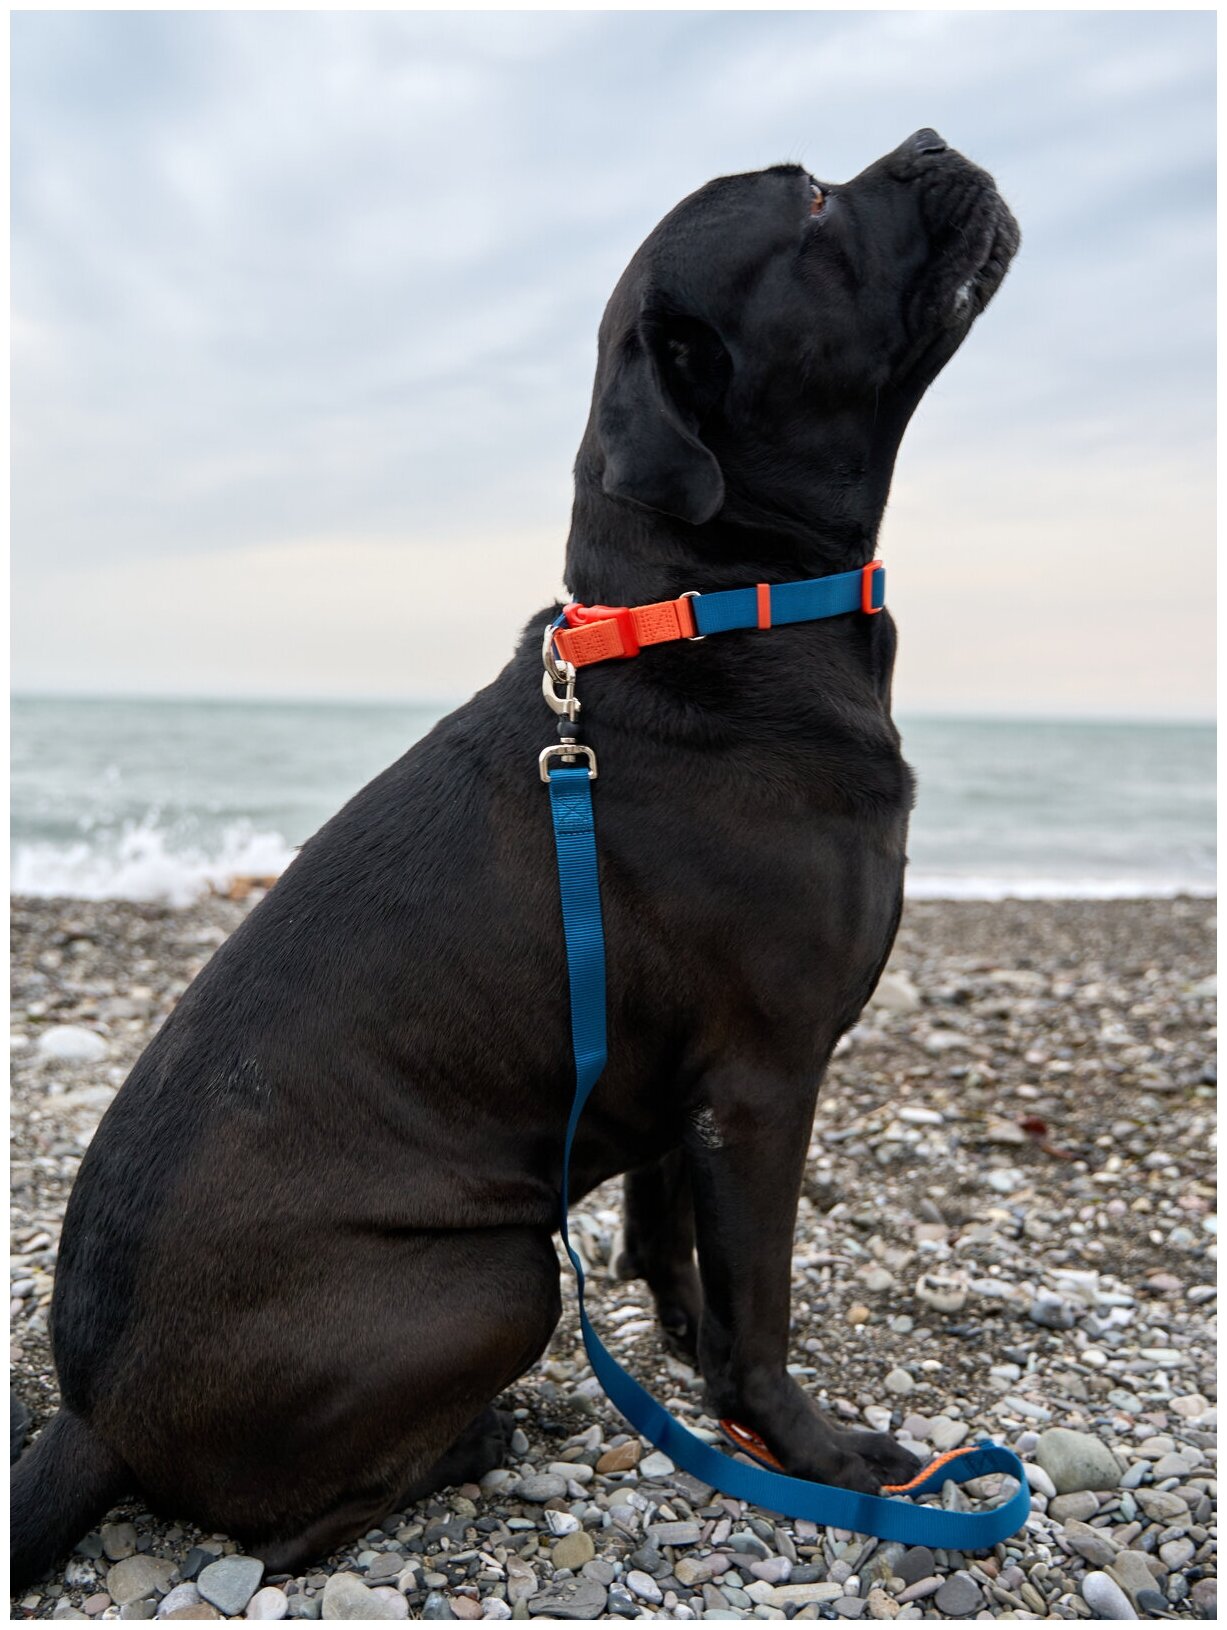 Поводок для собак Japan Premium Pet с защитой на карабине и мягкой анатомической вкладкой для рук, серия 40 оттенков радуги, темно-синий, размер L